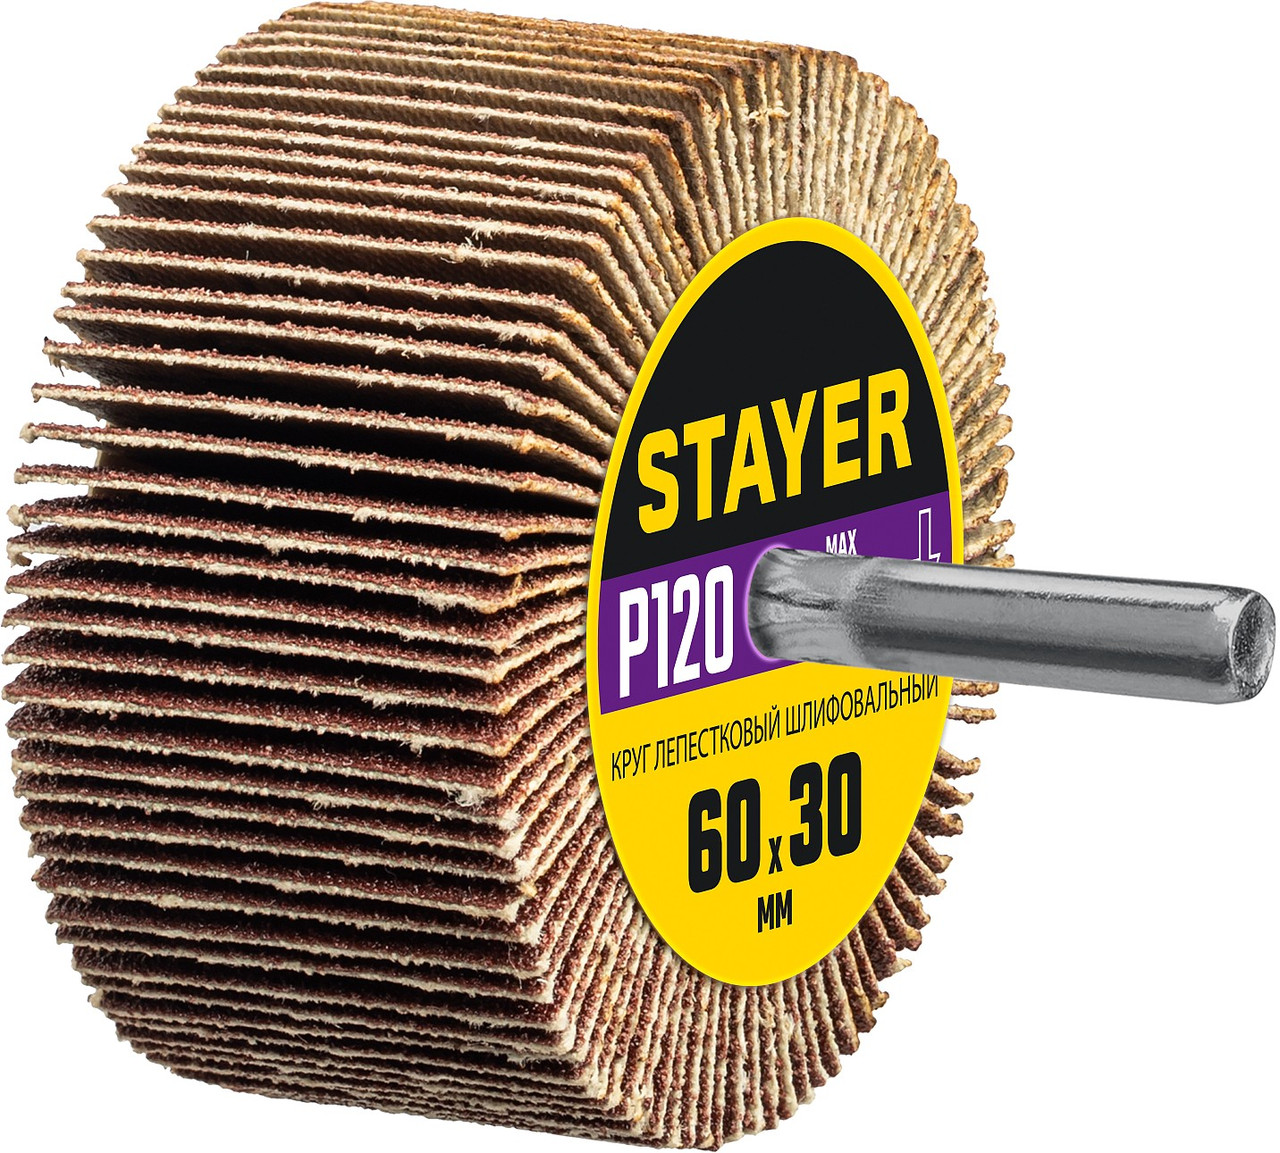 STAYER P120, 60х30 мм, круг шлифовальный лепестковый на шпильке 36608-120, фото 1